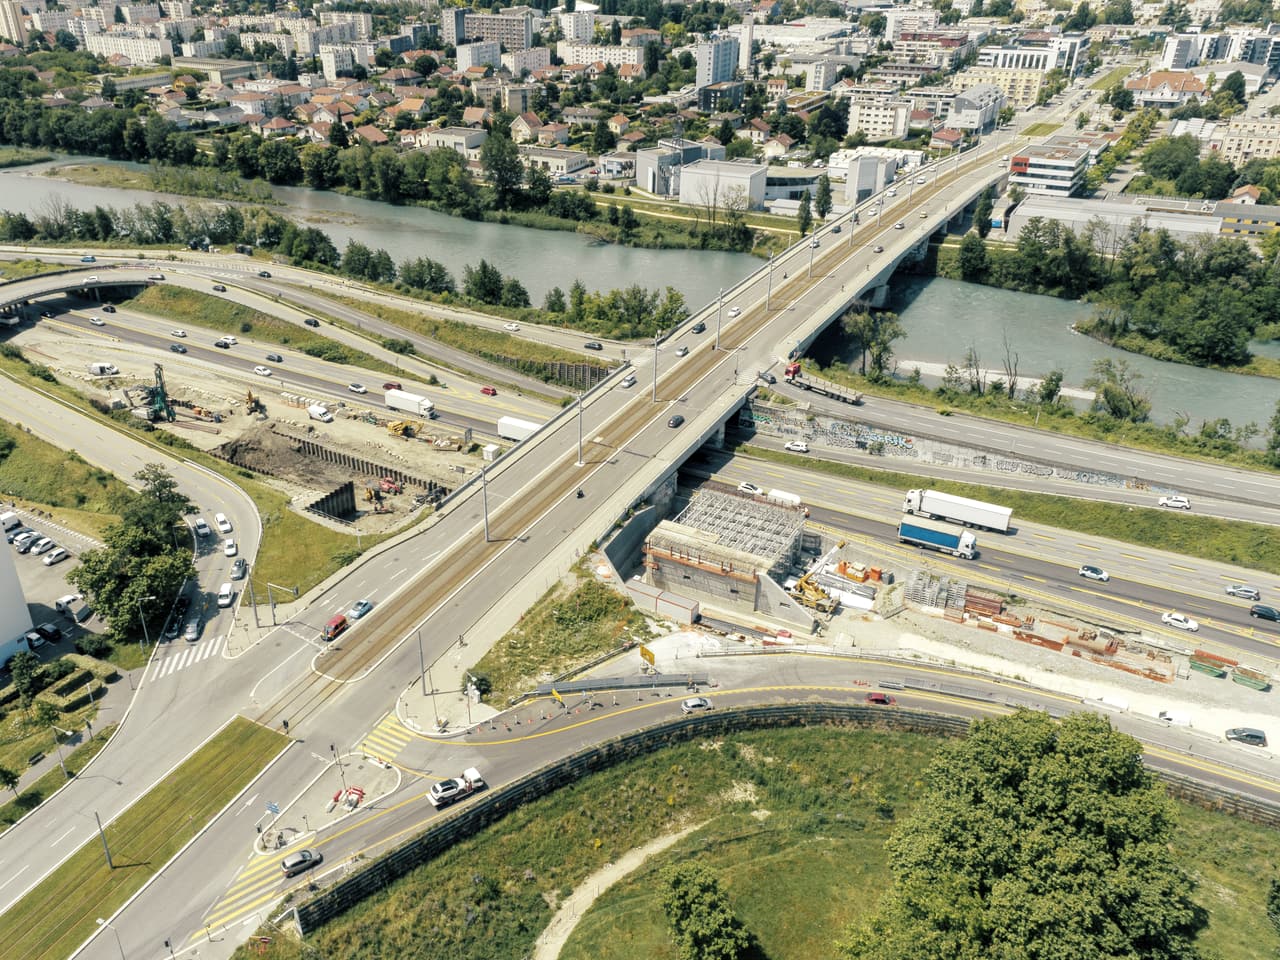 A480 Rondeau, pont de Catane de la ville de Grenoble vu du ciel